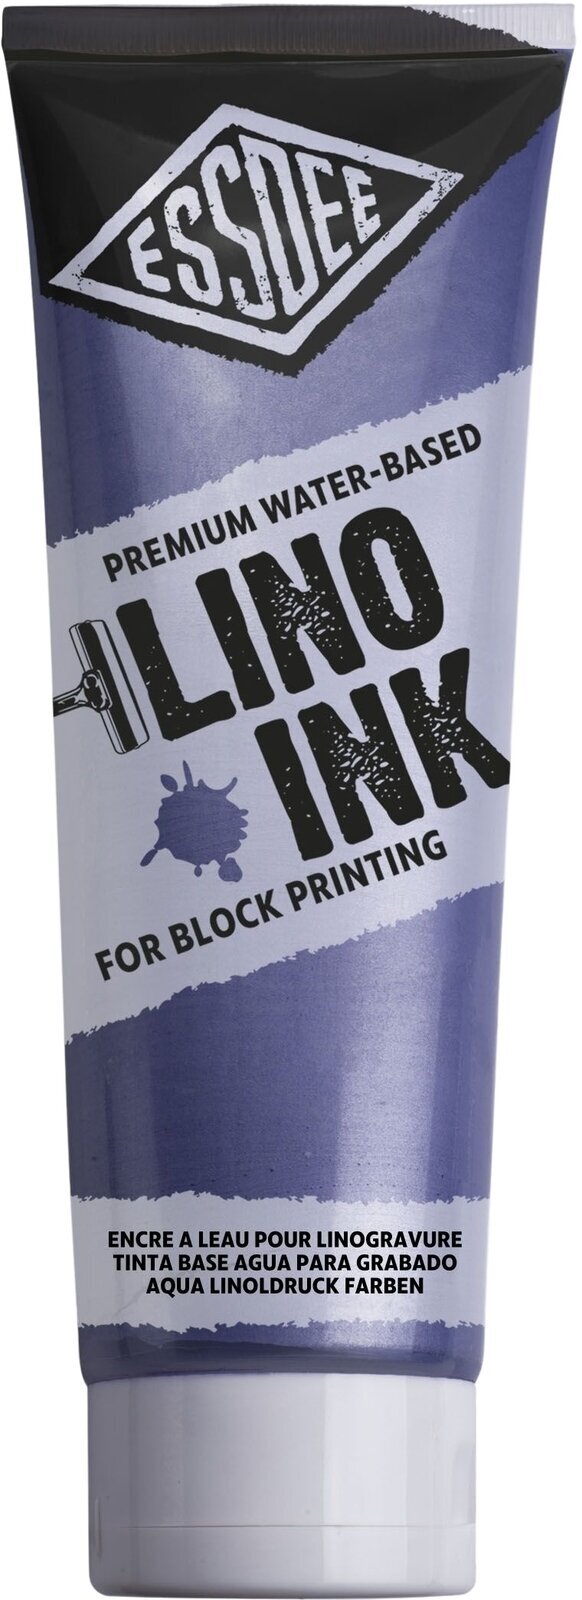 Χρώμα για λινογραφία Essdee Block Printing Ink Χρώμα για λινογραφία Pearlescent Violet 300 ml